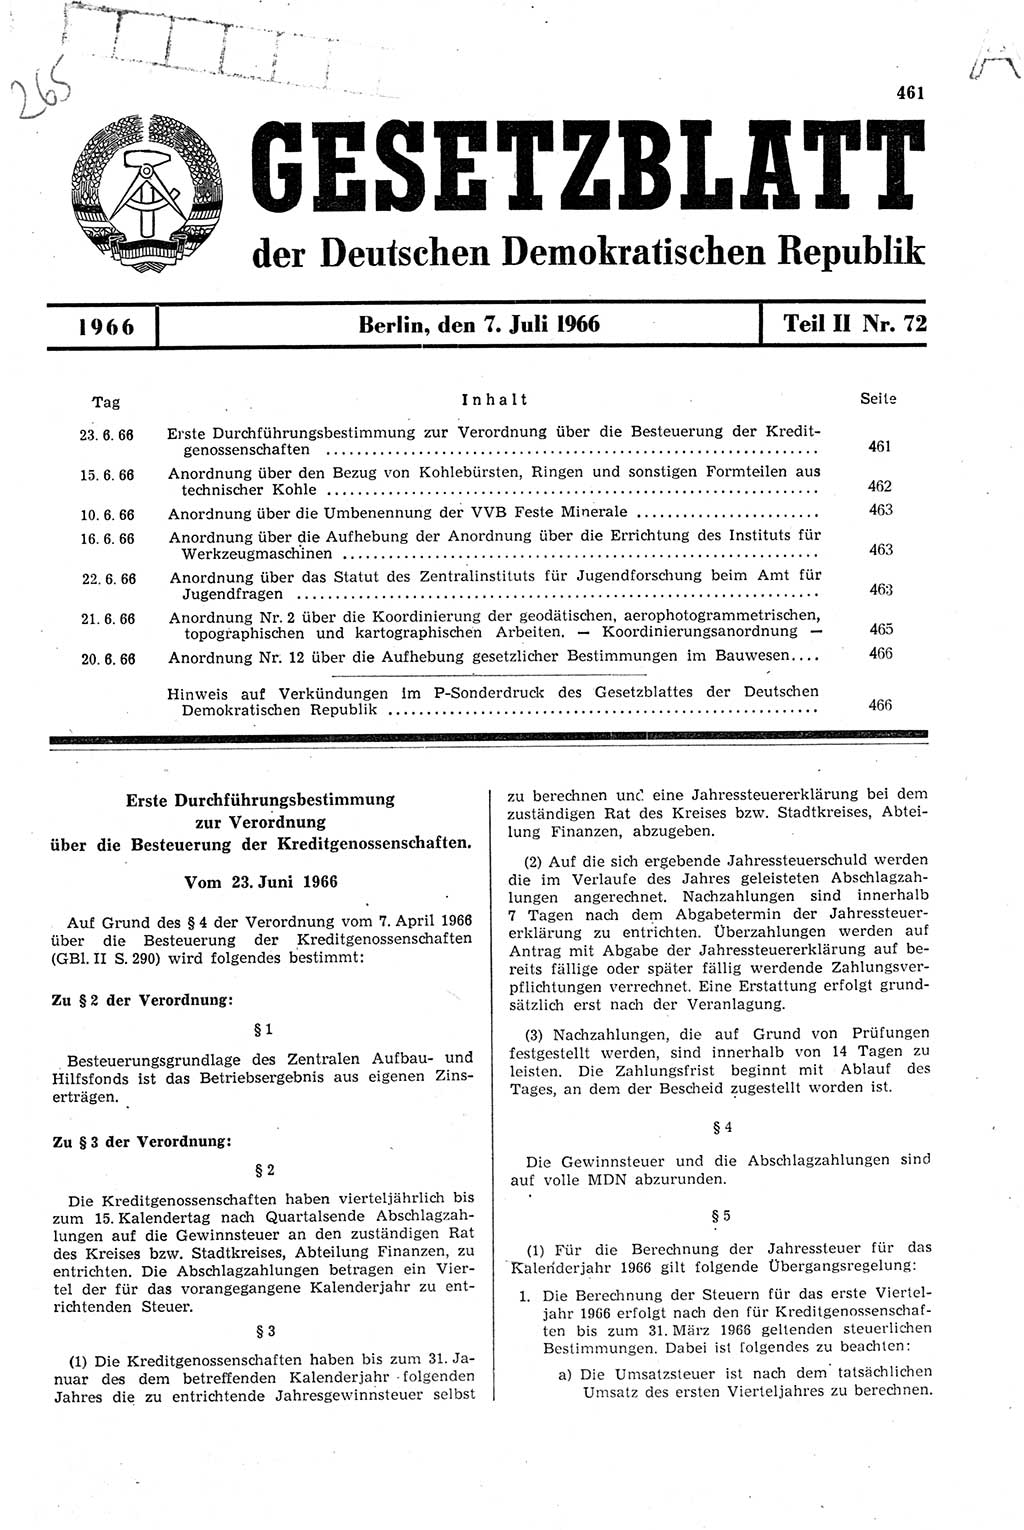 Gesetzblatt (GBl.) der Deutschen Demokratischen Republik (DDR) Teil ⅠⅠ 1966, Seite 461 (GBl. DDR ⅠⅠ 1966, S. 461)